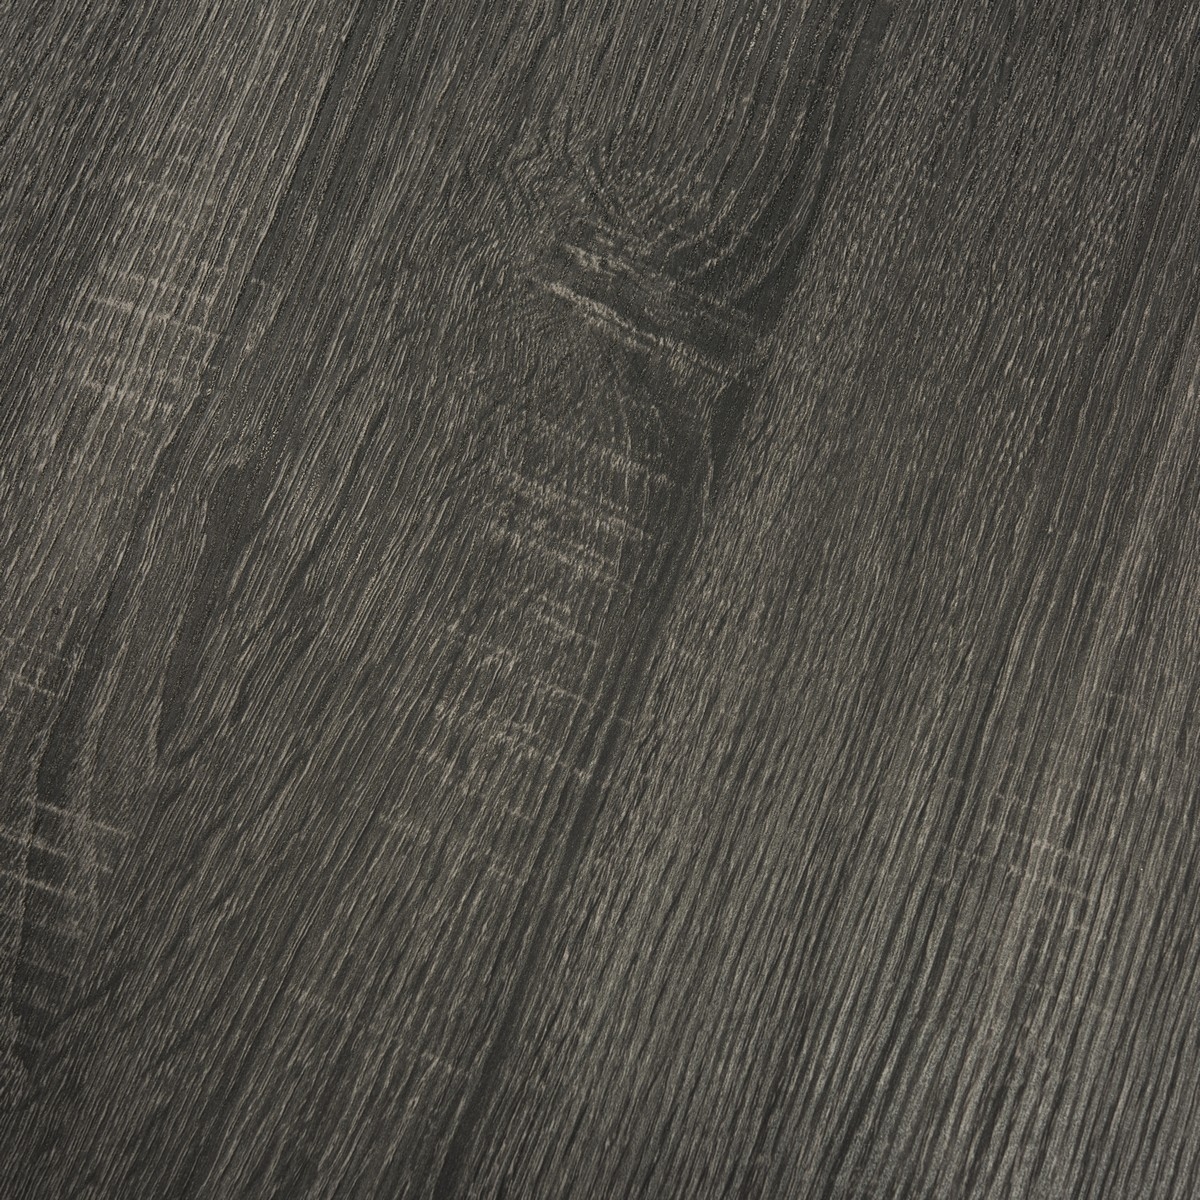 Cursten Retro Mid Century Wood Tray Top Coffee Table - Dark Grey - Arlo Home - Image 4